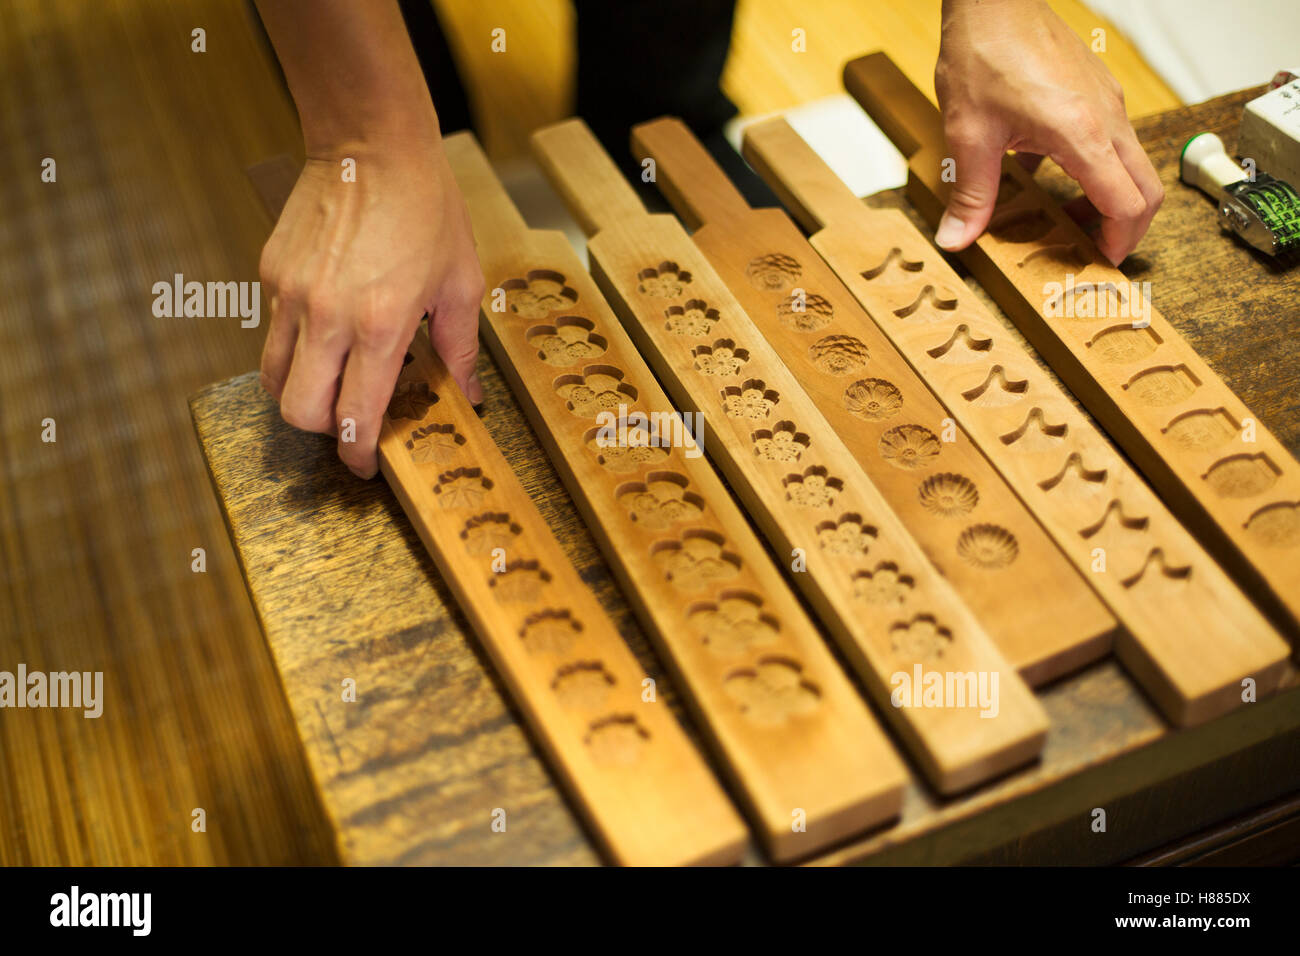 Eine kleinen Handwerker-Hersteller von Spezialisten behandelt, Süßigkeiten Wagashi genannt. Traditionelle hölzerne Formen für verschiedene Sorten. Stockfoto